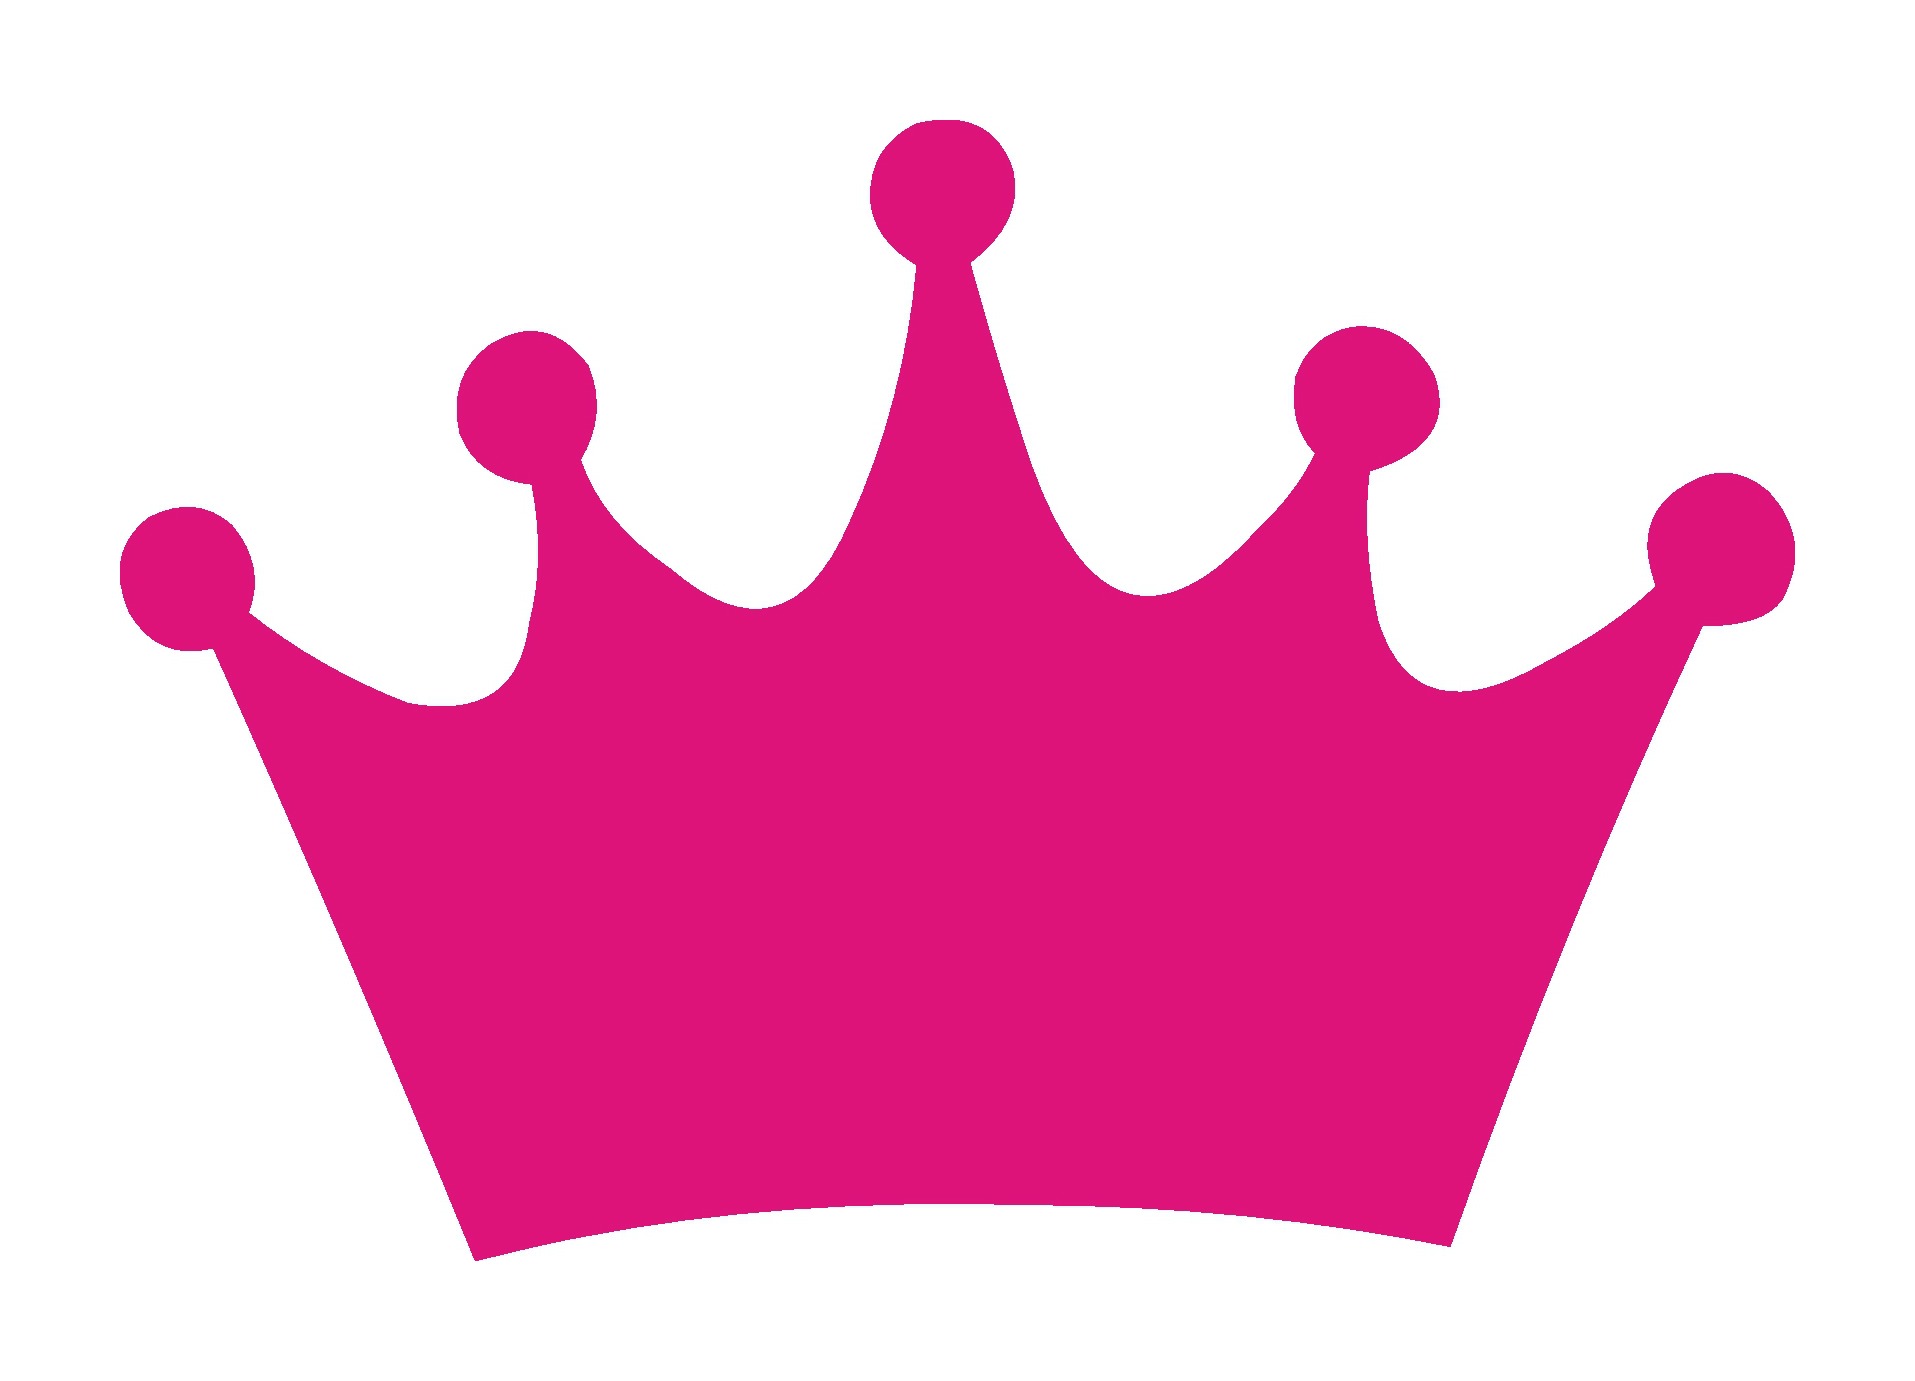 Princess Tiara Crowns And ..